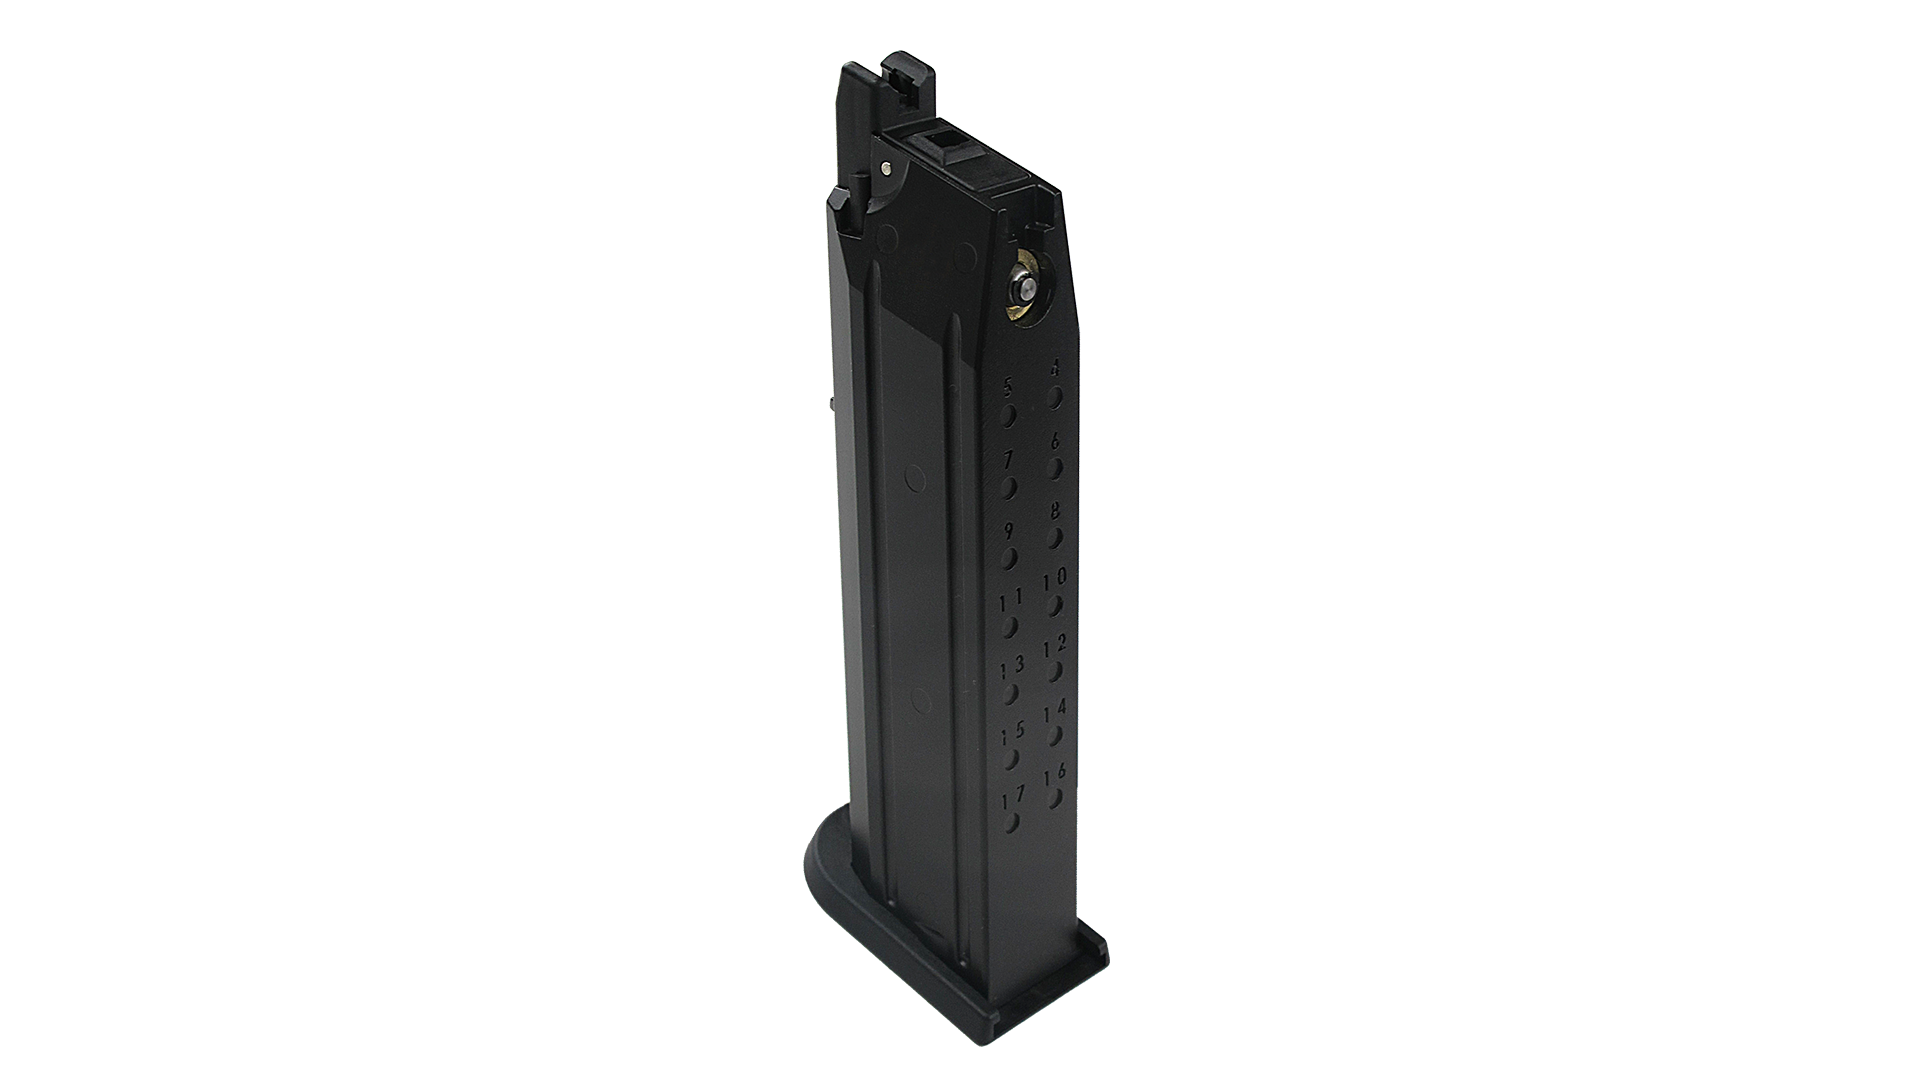 【AE-86】XAE V2 瓦斯彈匣 (24發; 1入/組) - 黑色